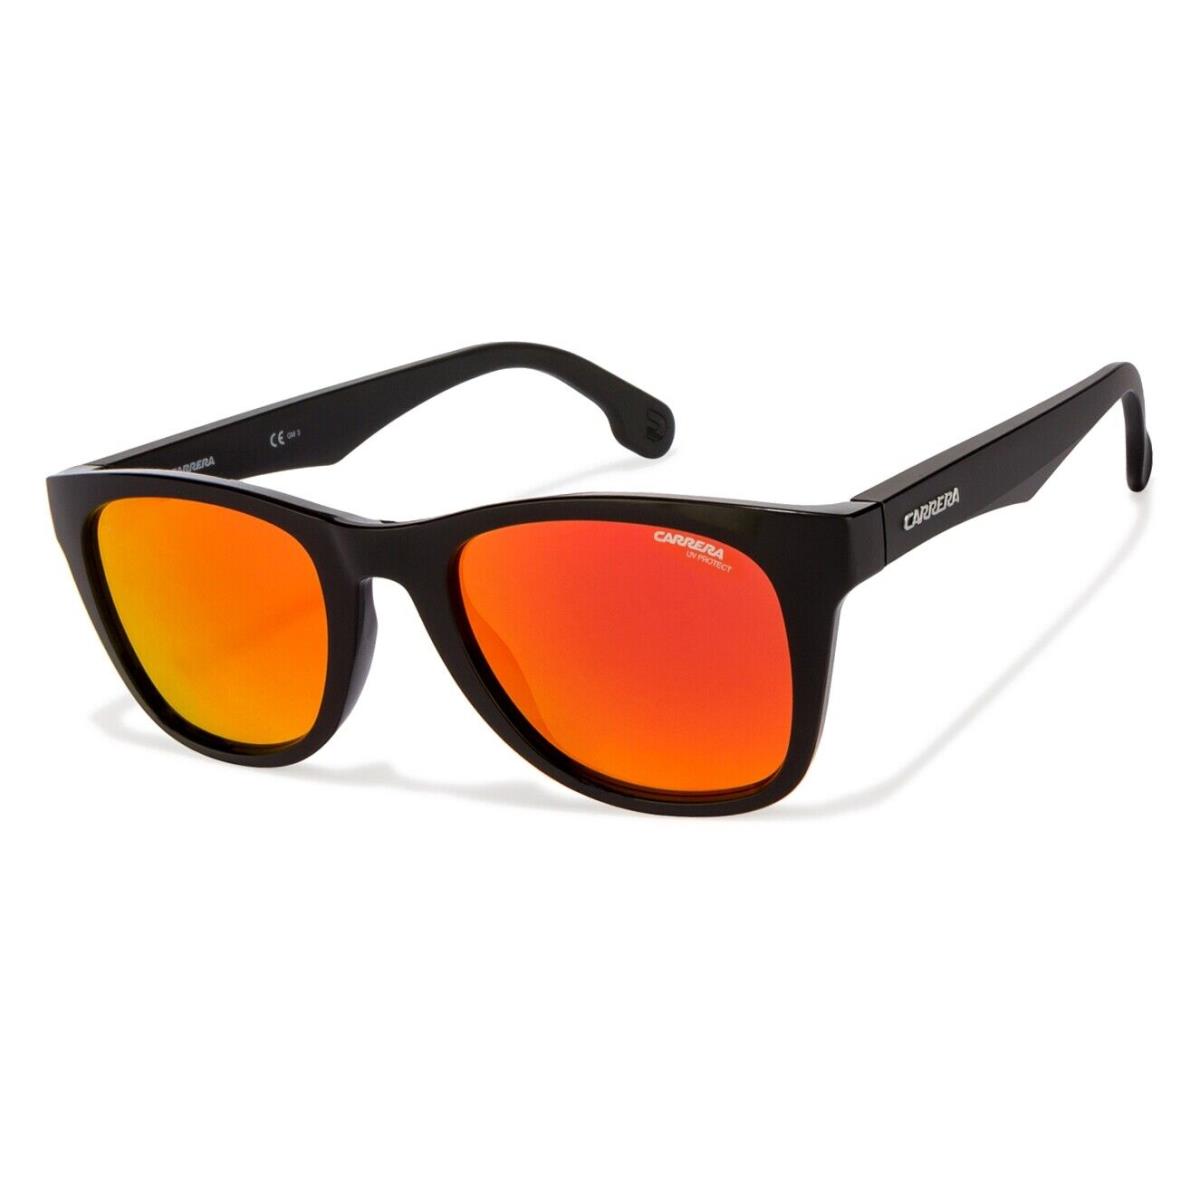 Carrera 5038/s Ppr Black Orange Mirror 51mm Unisex Small Medium Sunglasses